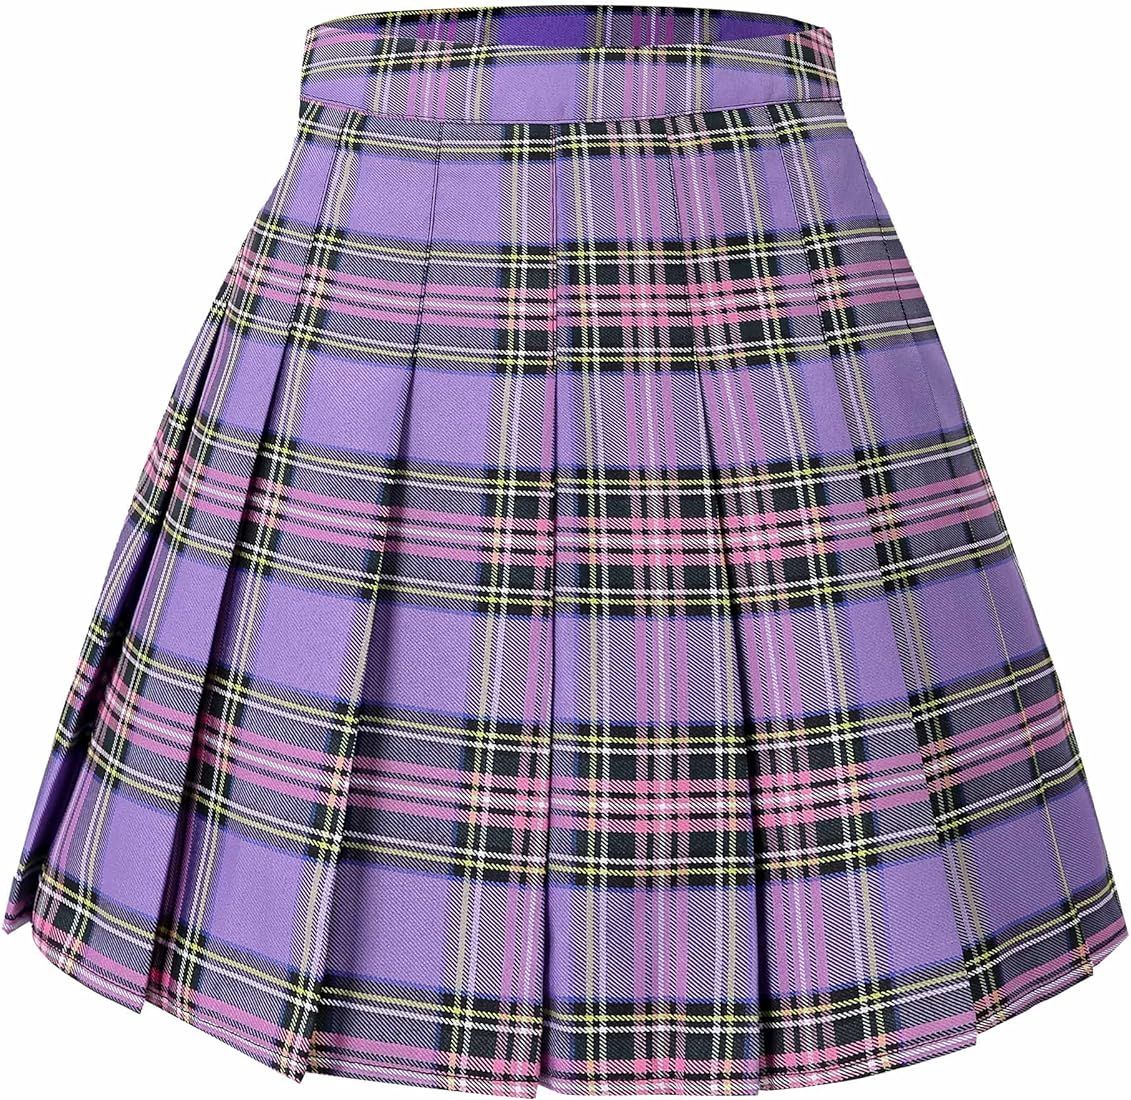 Hoerev Women Girls Short High Waist Pleated Skater Tennis School Skirt | Amazon (UK)